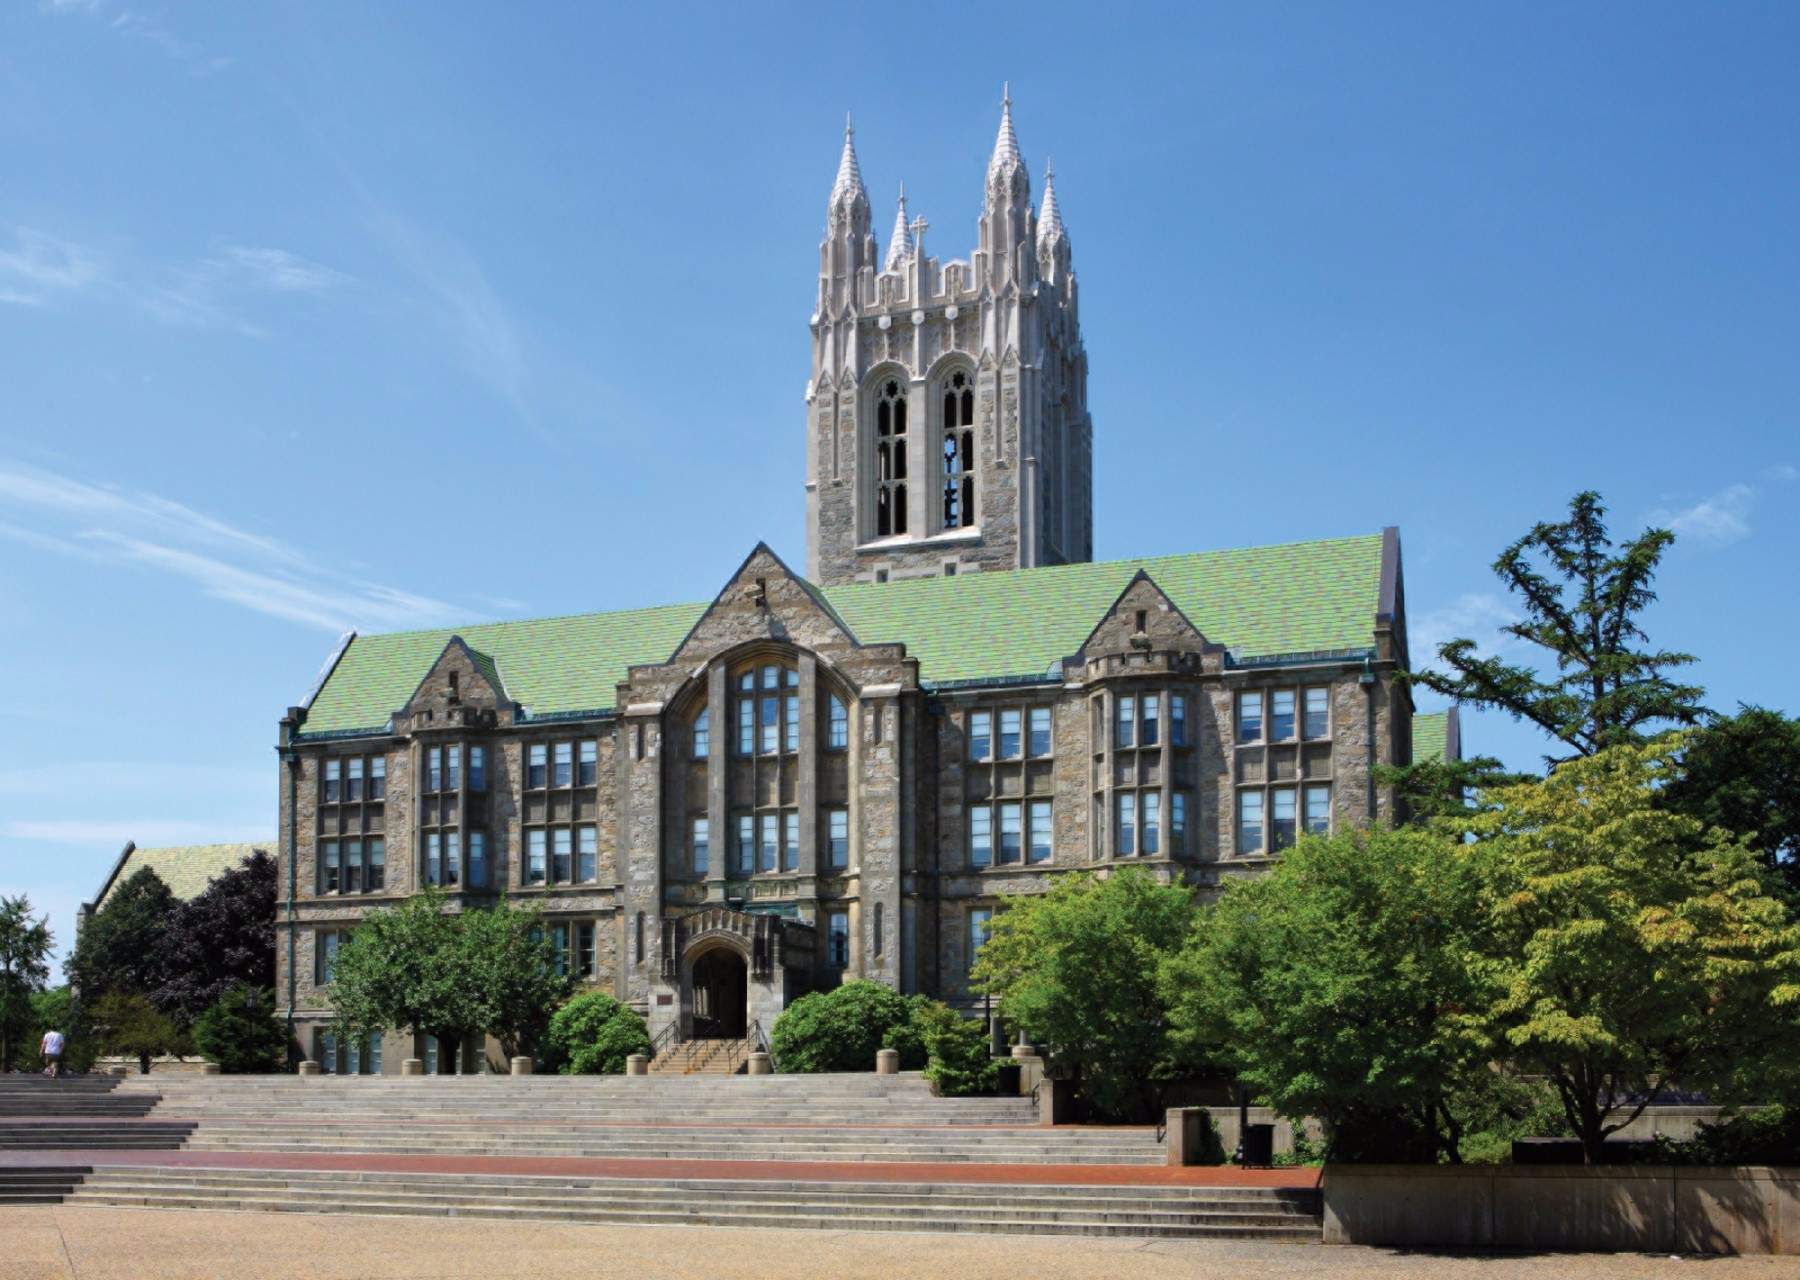 波士顿的学术气氛浓厚,哈佛大学,麻省理工学院,波士顿学院,塔夫茨大学